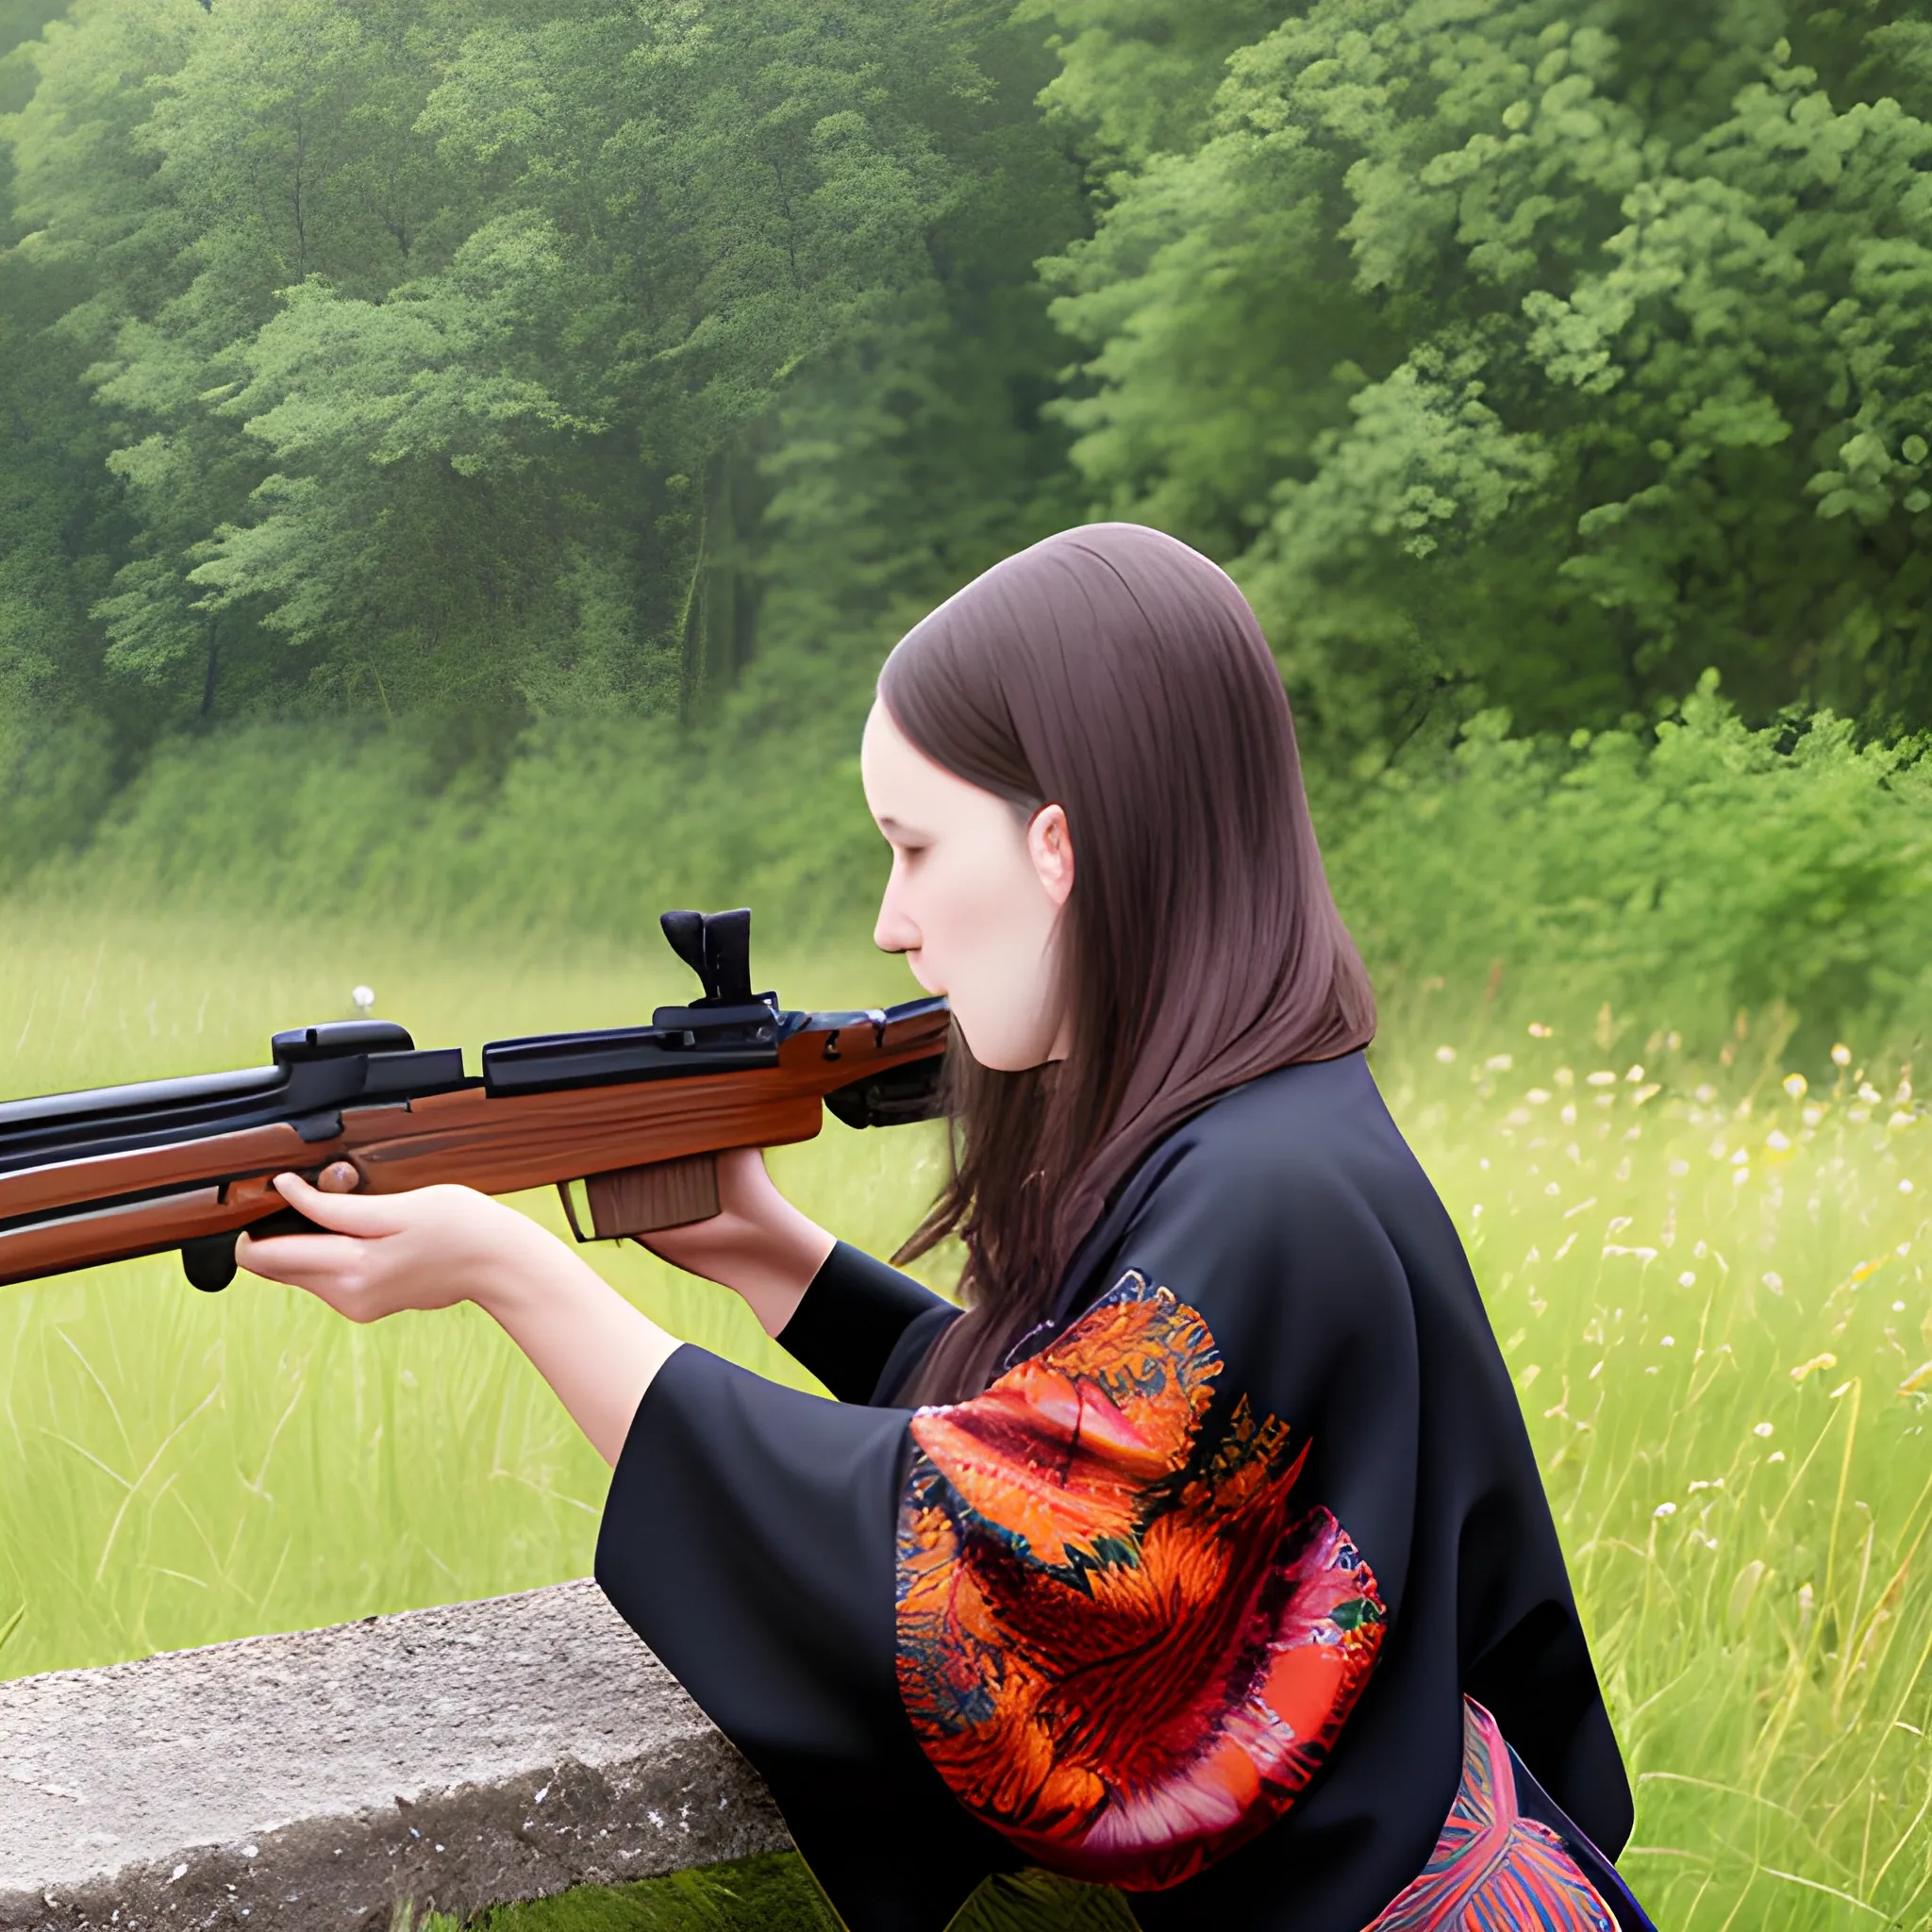 franek kimono shooting ak-47